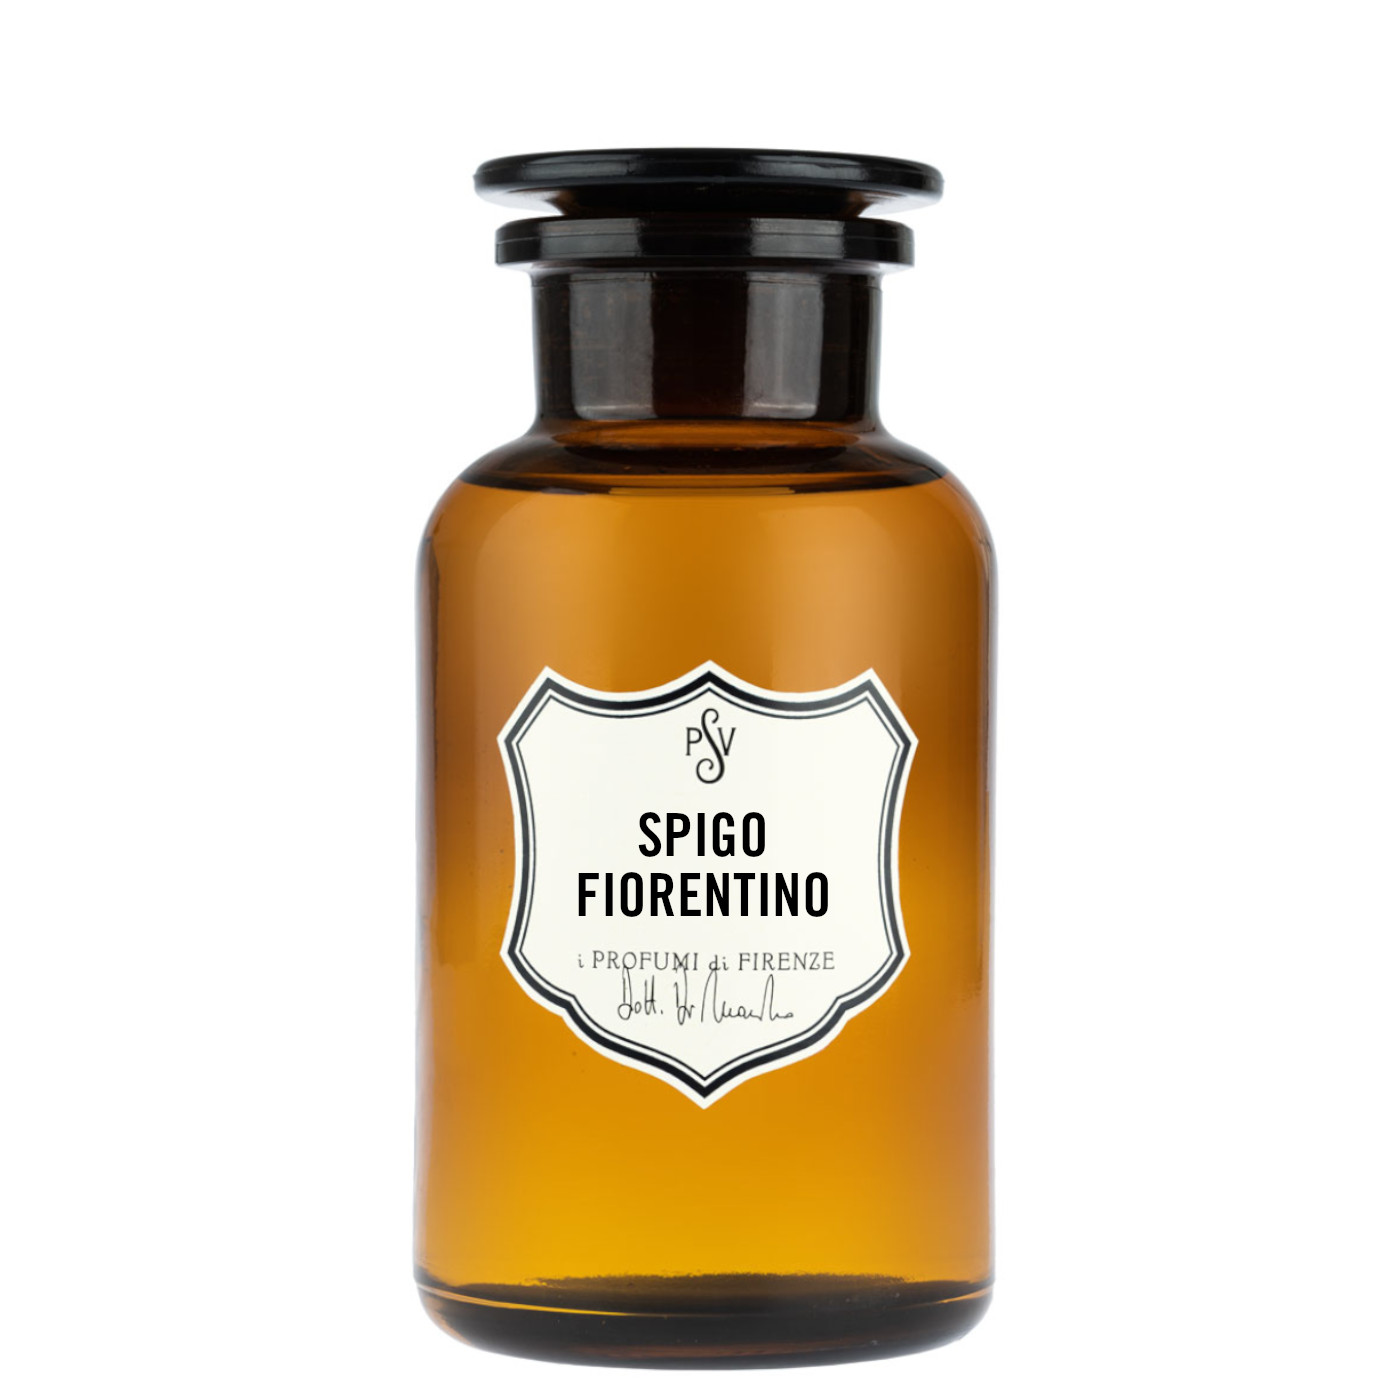 SPIGO FIORENTINO - Home Fragrance-4489